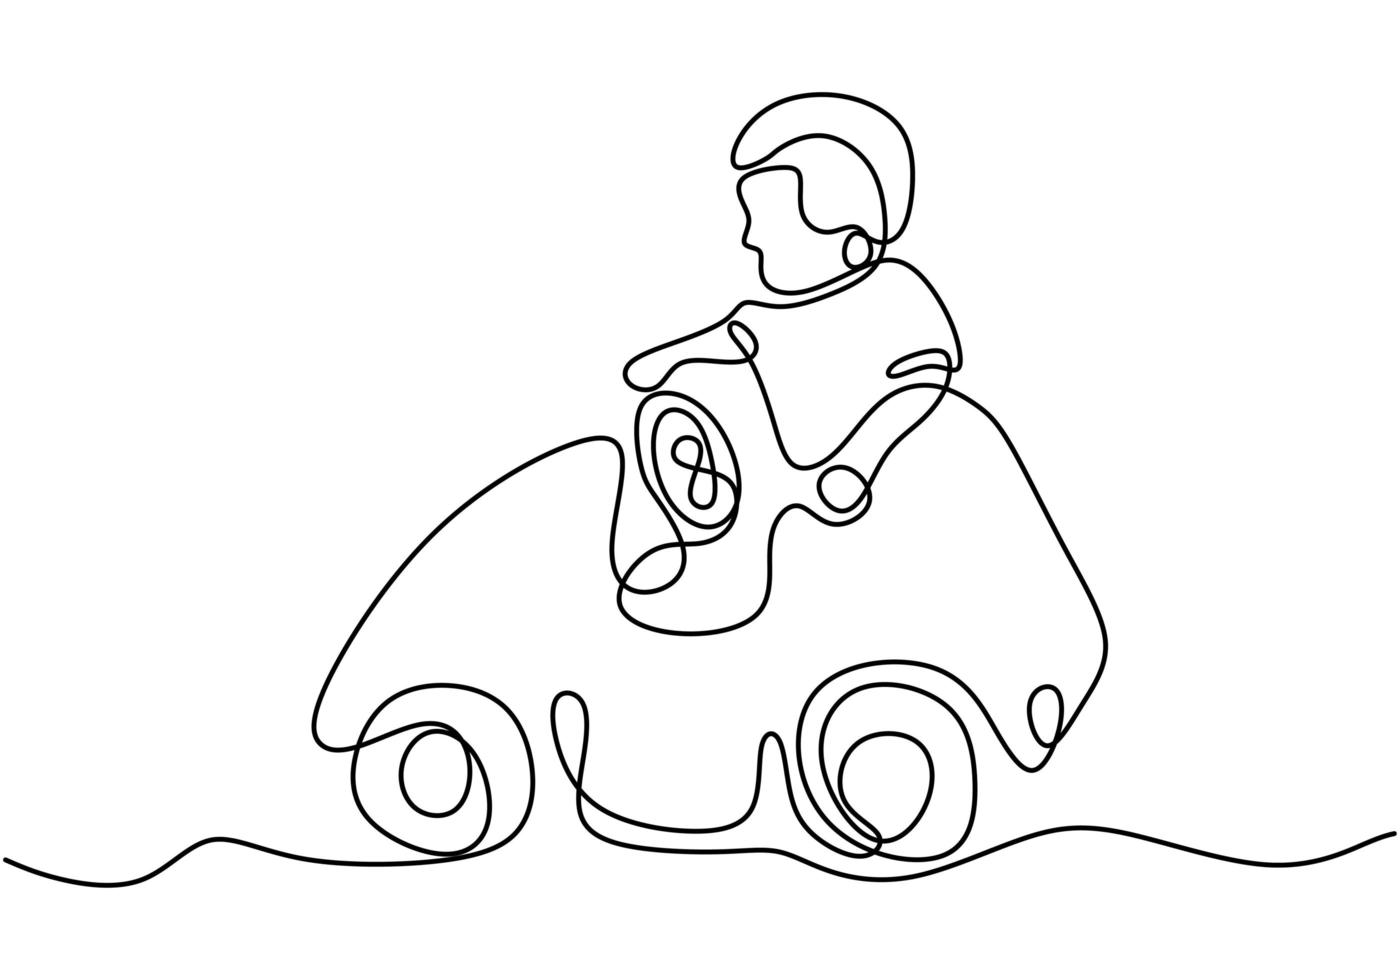 Ein Junge spielt mit seinem Spielzeugauto. glücklich, ihr Auto zu fahren. spielender Junge, der auf Auto fährt. eine Zeile durchgehend. Vektorillustration vektor